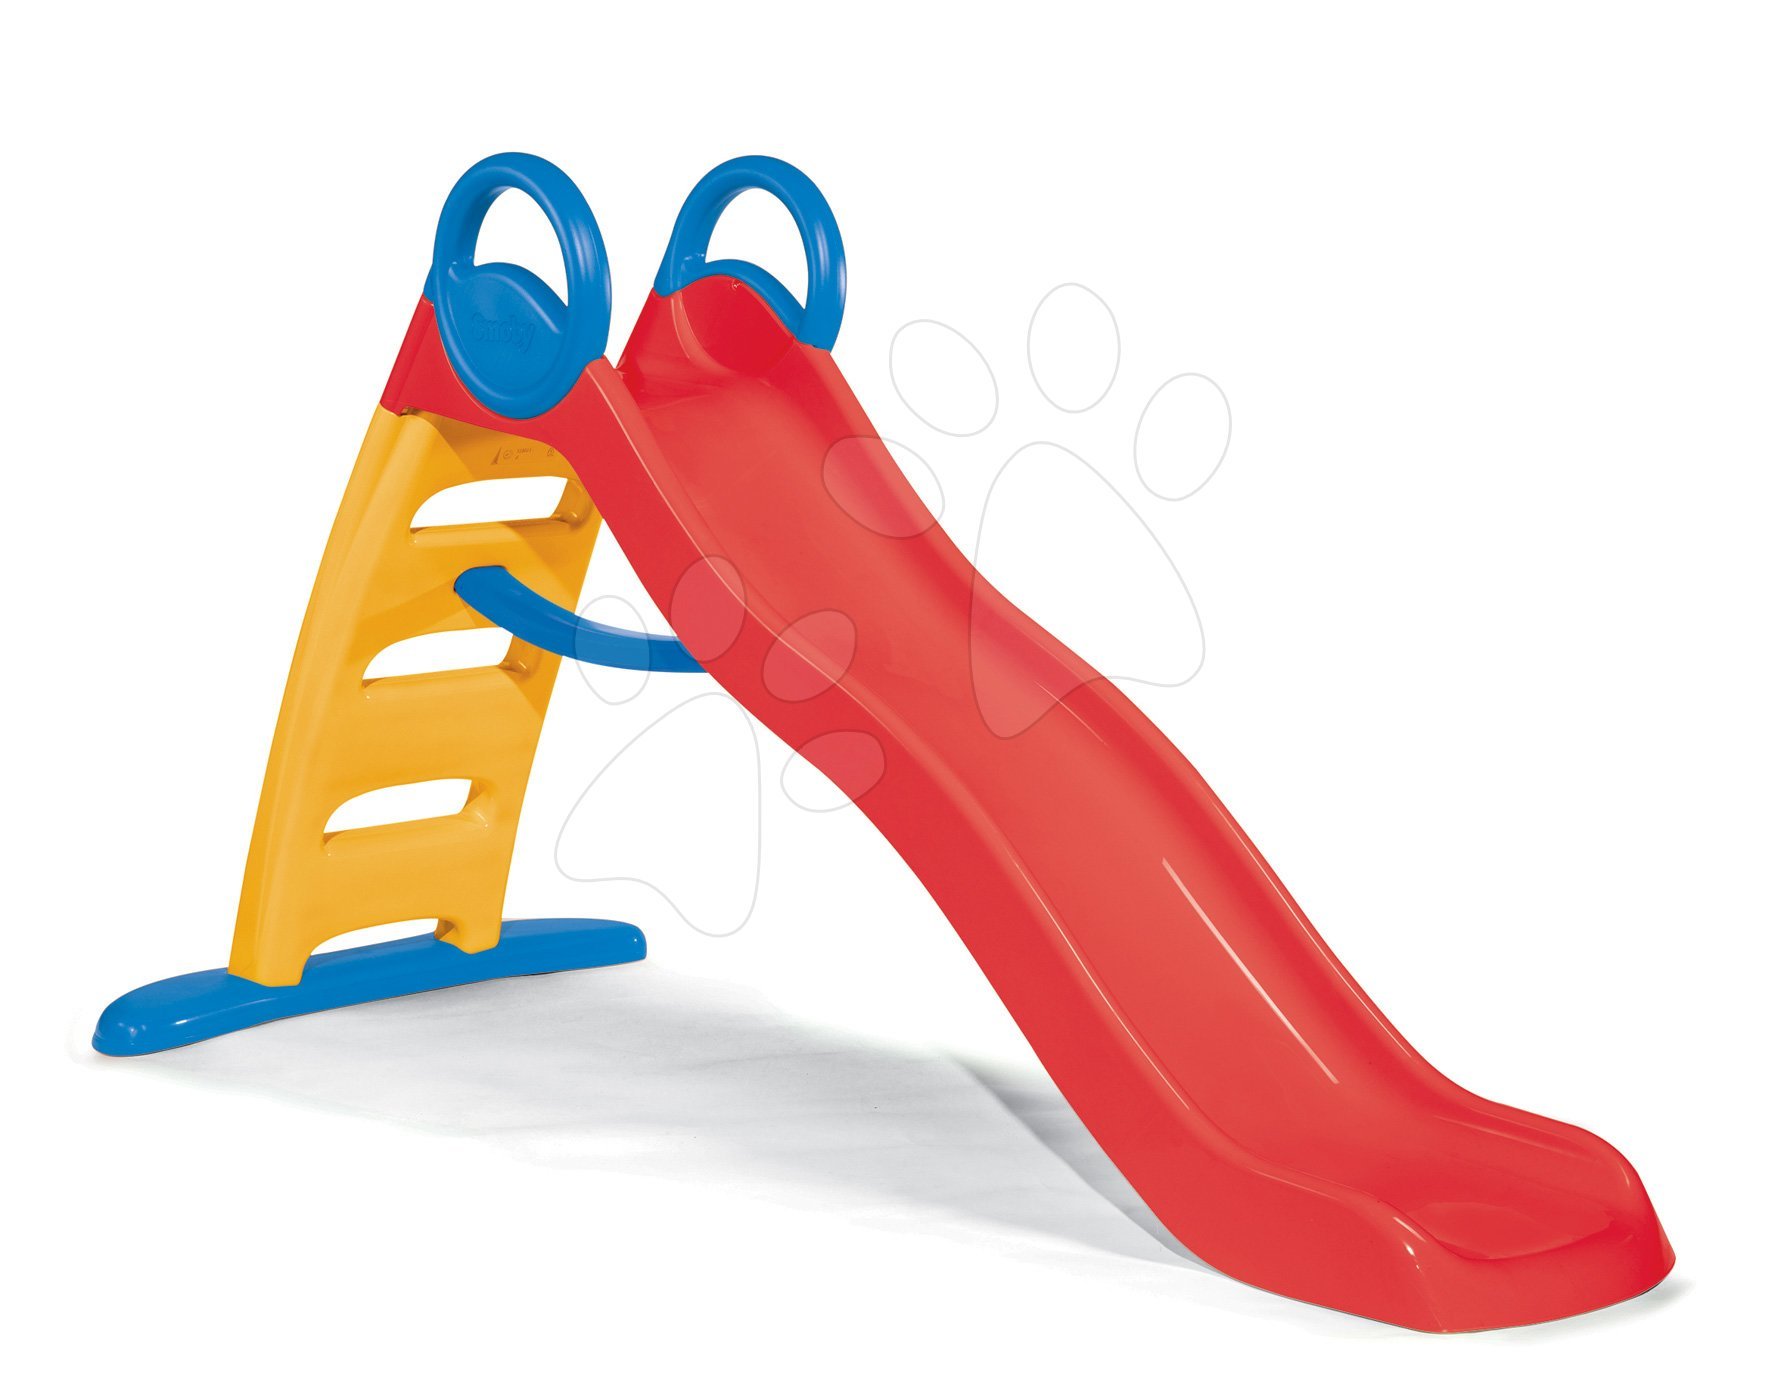 Skluzavky pro děti - Skluzavka Funny Toboggan Smoby 2 metrová délka s ergonomickým držákem od 24 měsíců